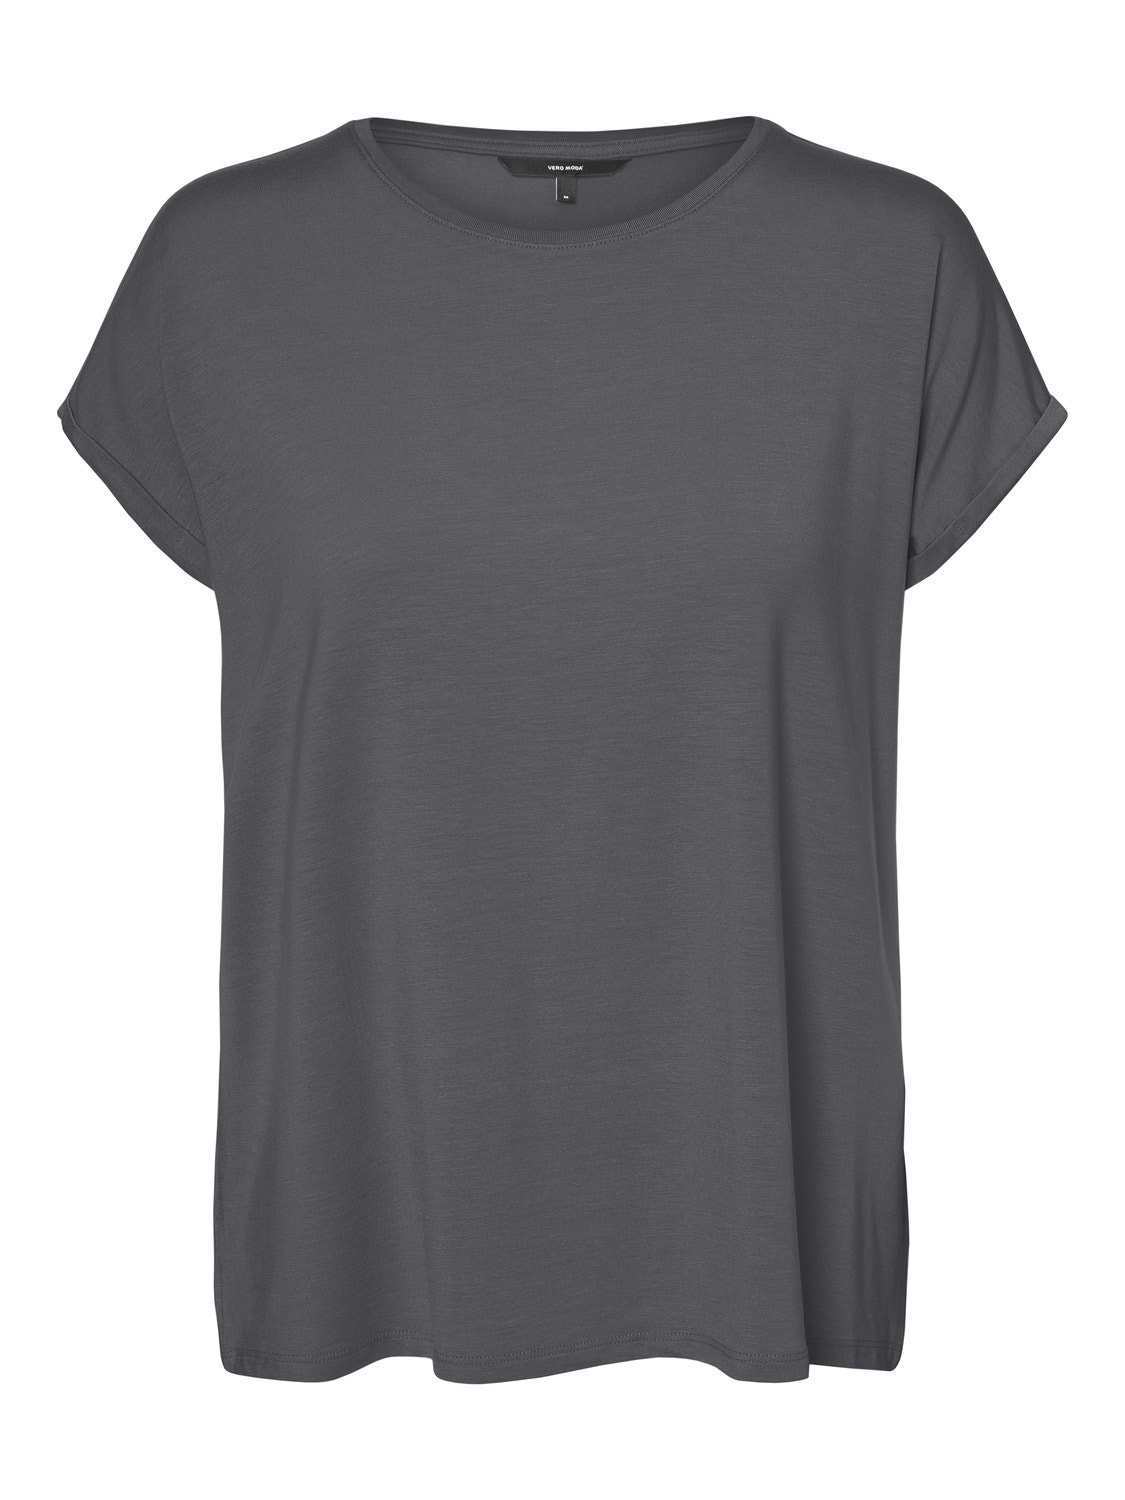 Vero Moda VMAVA T-Shirt -Asphalt - 10284468